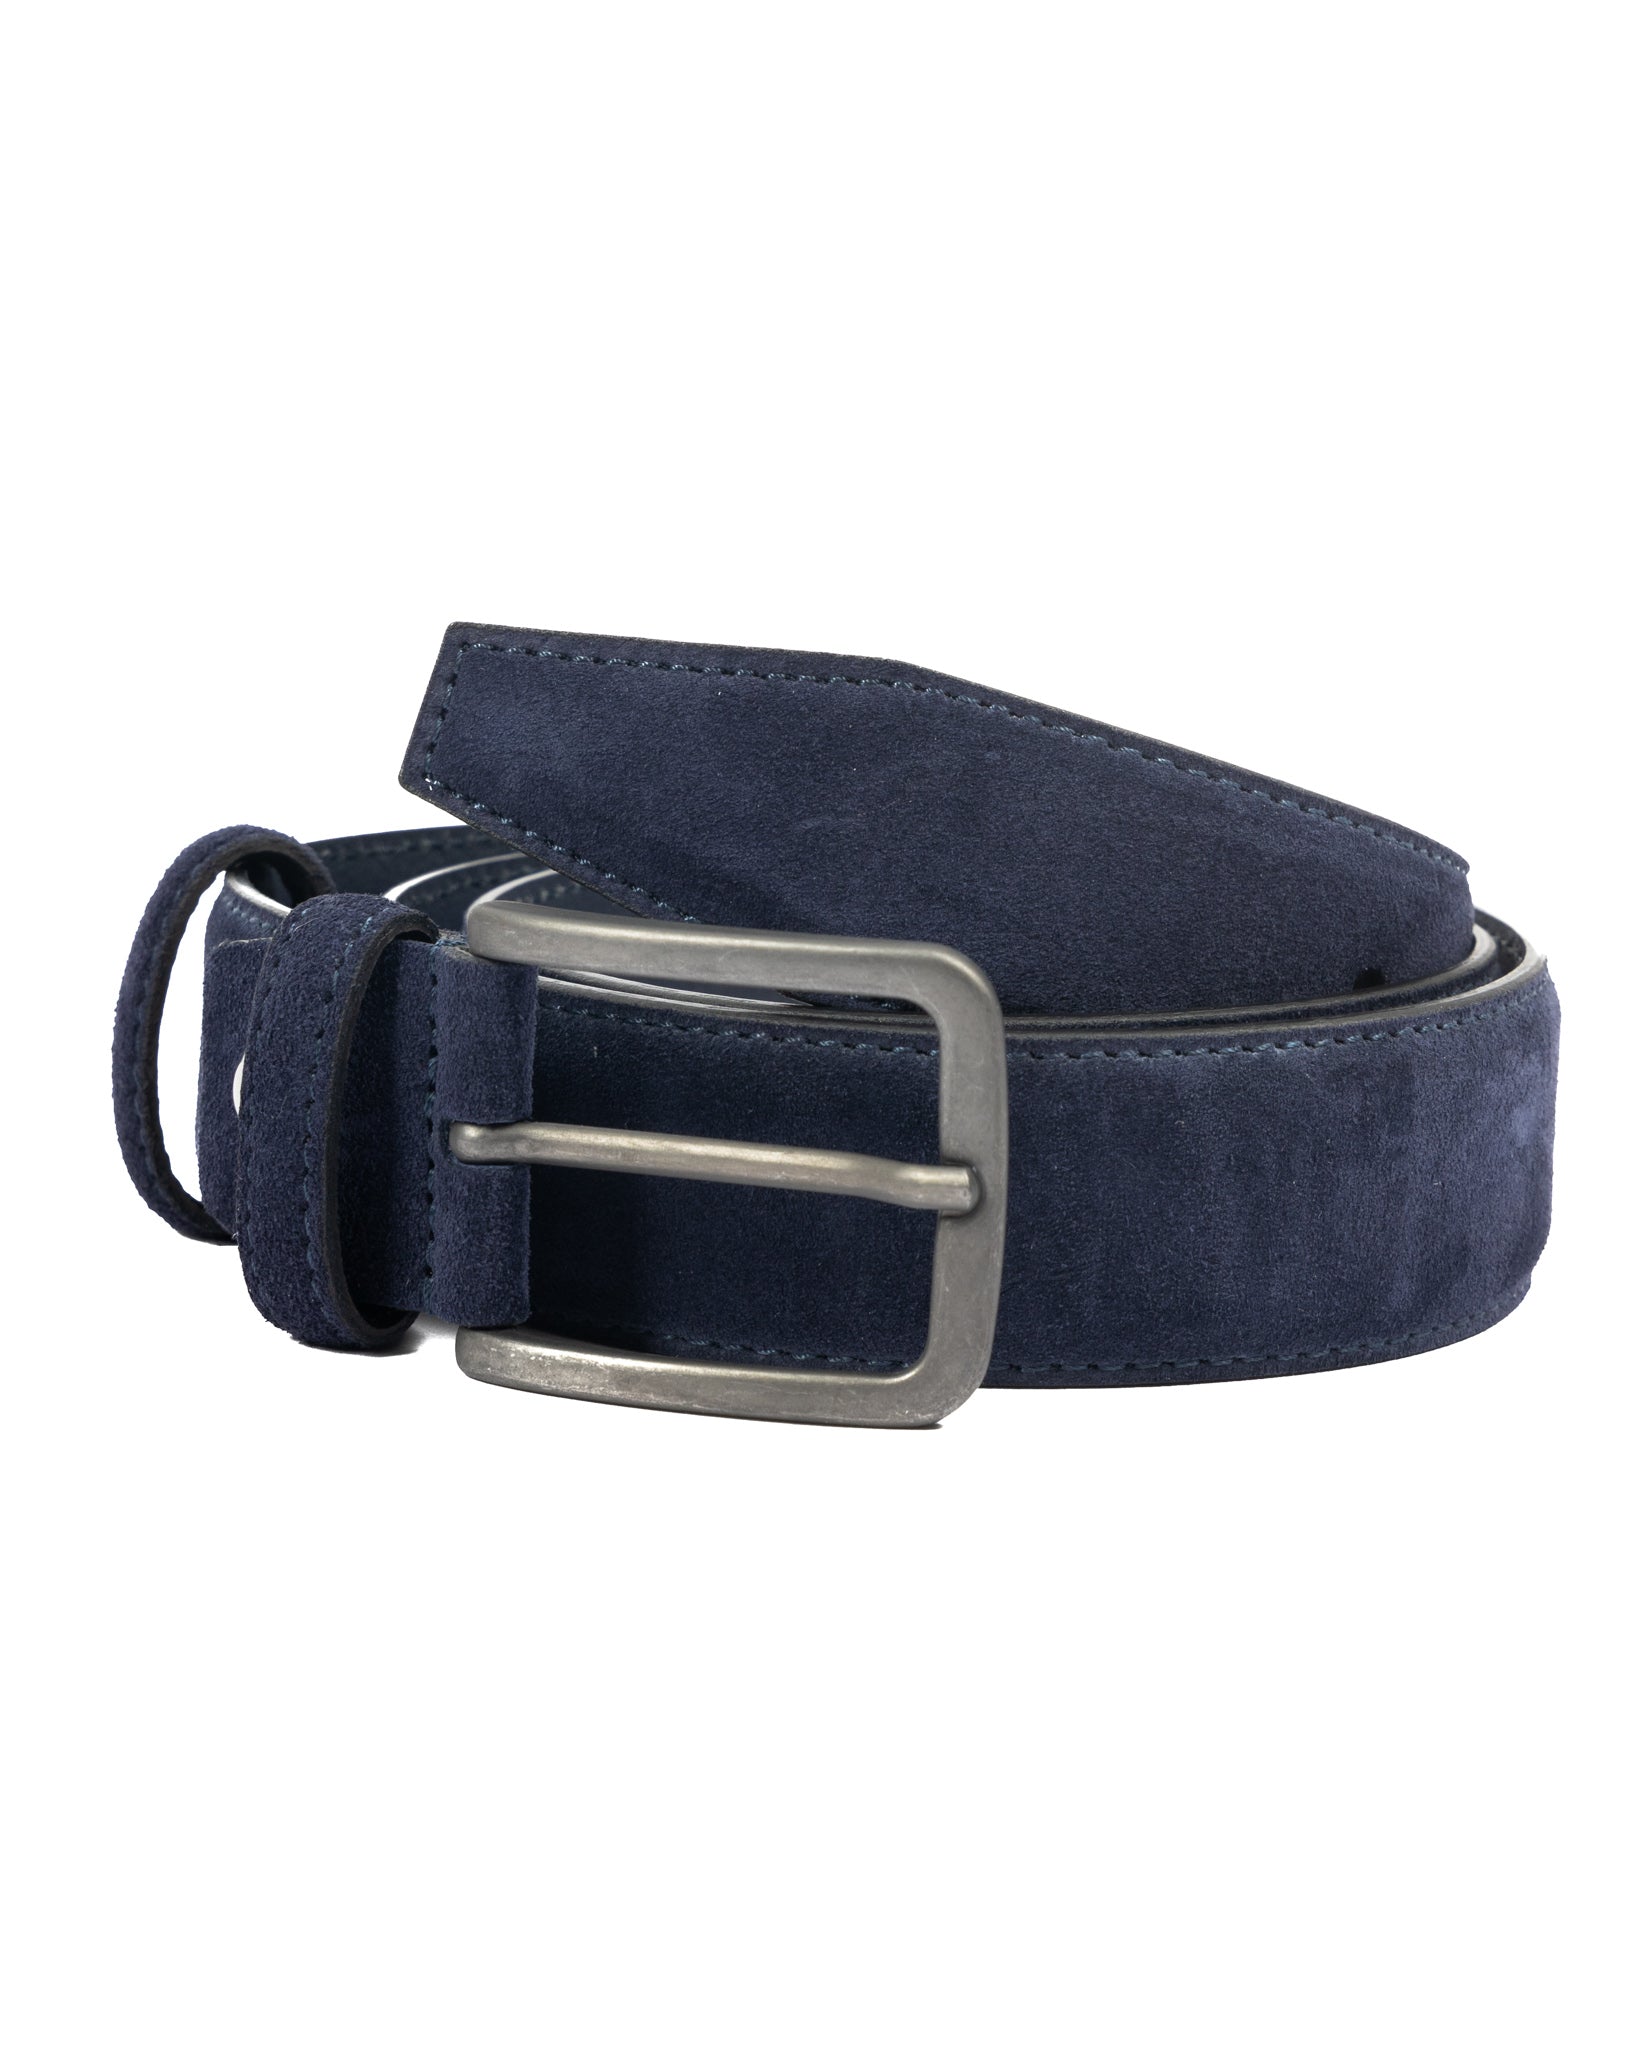 Cortona - ceinture en daim bleu